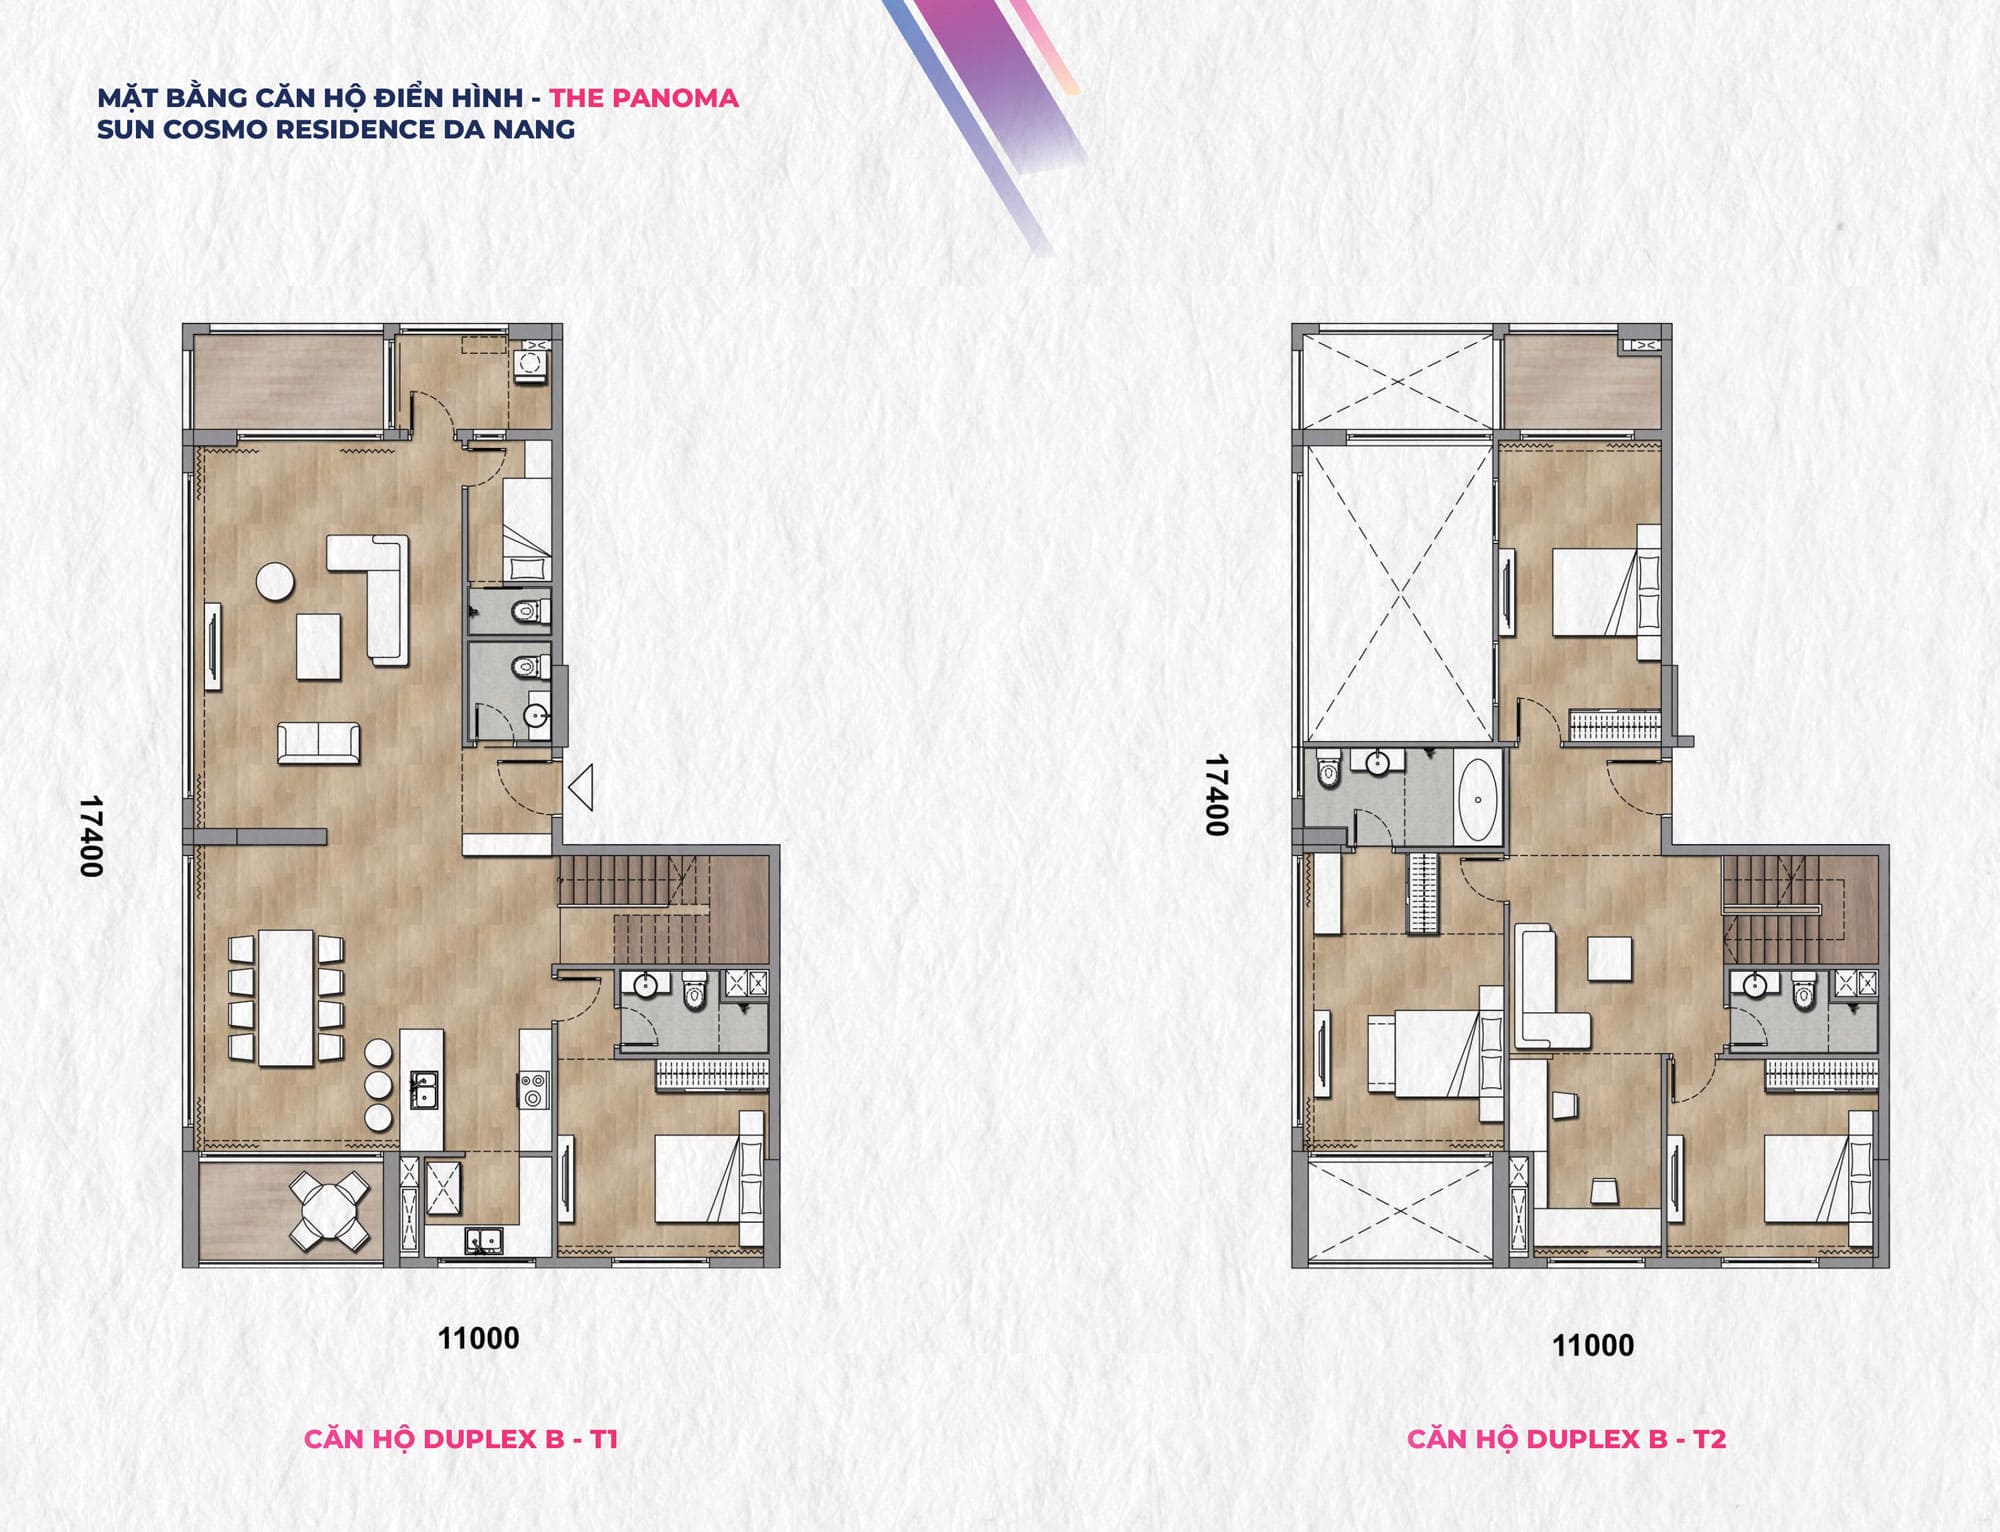 Layout căn hộ Duplex B-T1 và Duplex B-T2 Tháp P1 phân khu The Panoma Sun Cosmo Residence.